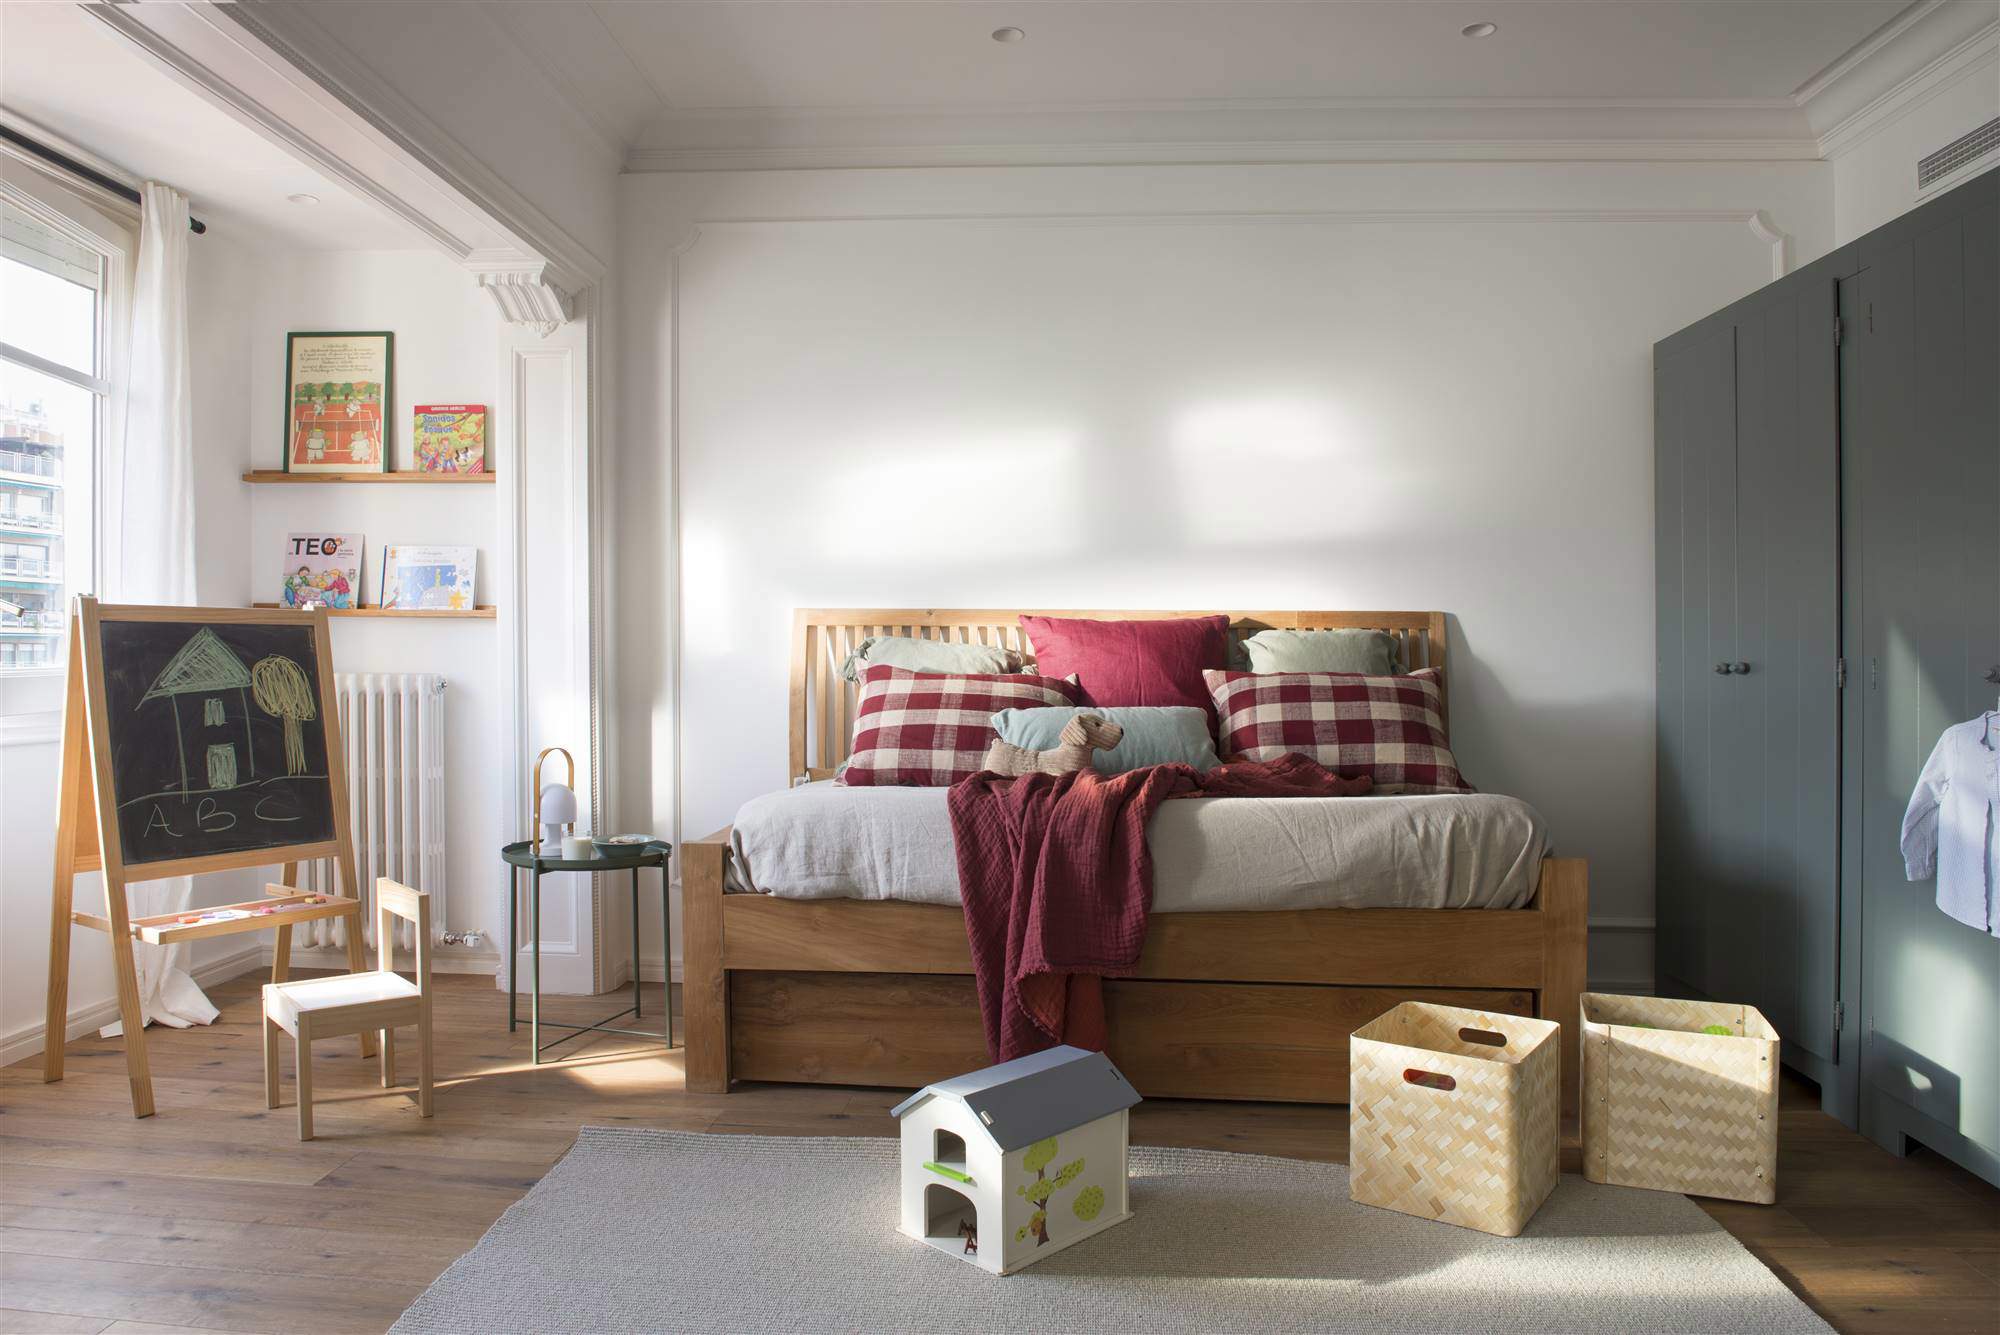 Dormitorio infantil con cama de madera.